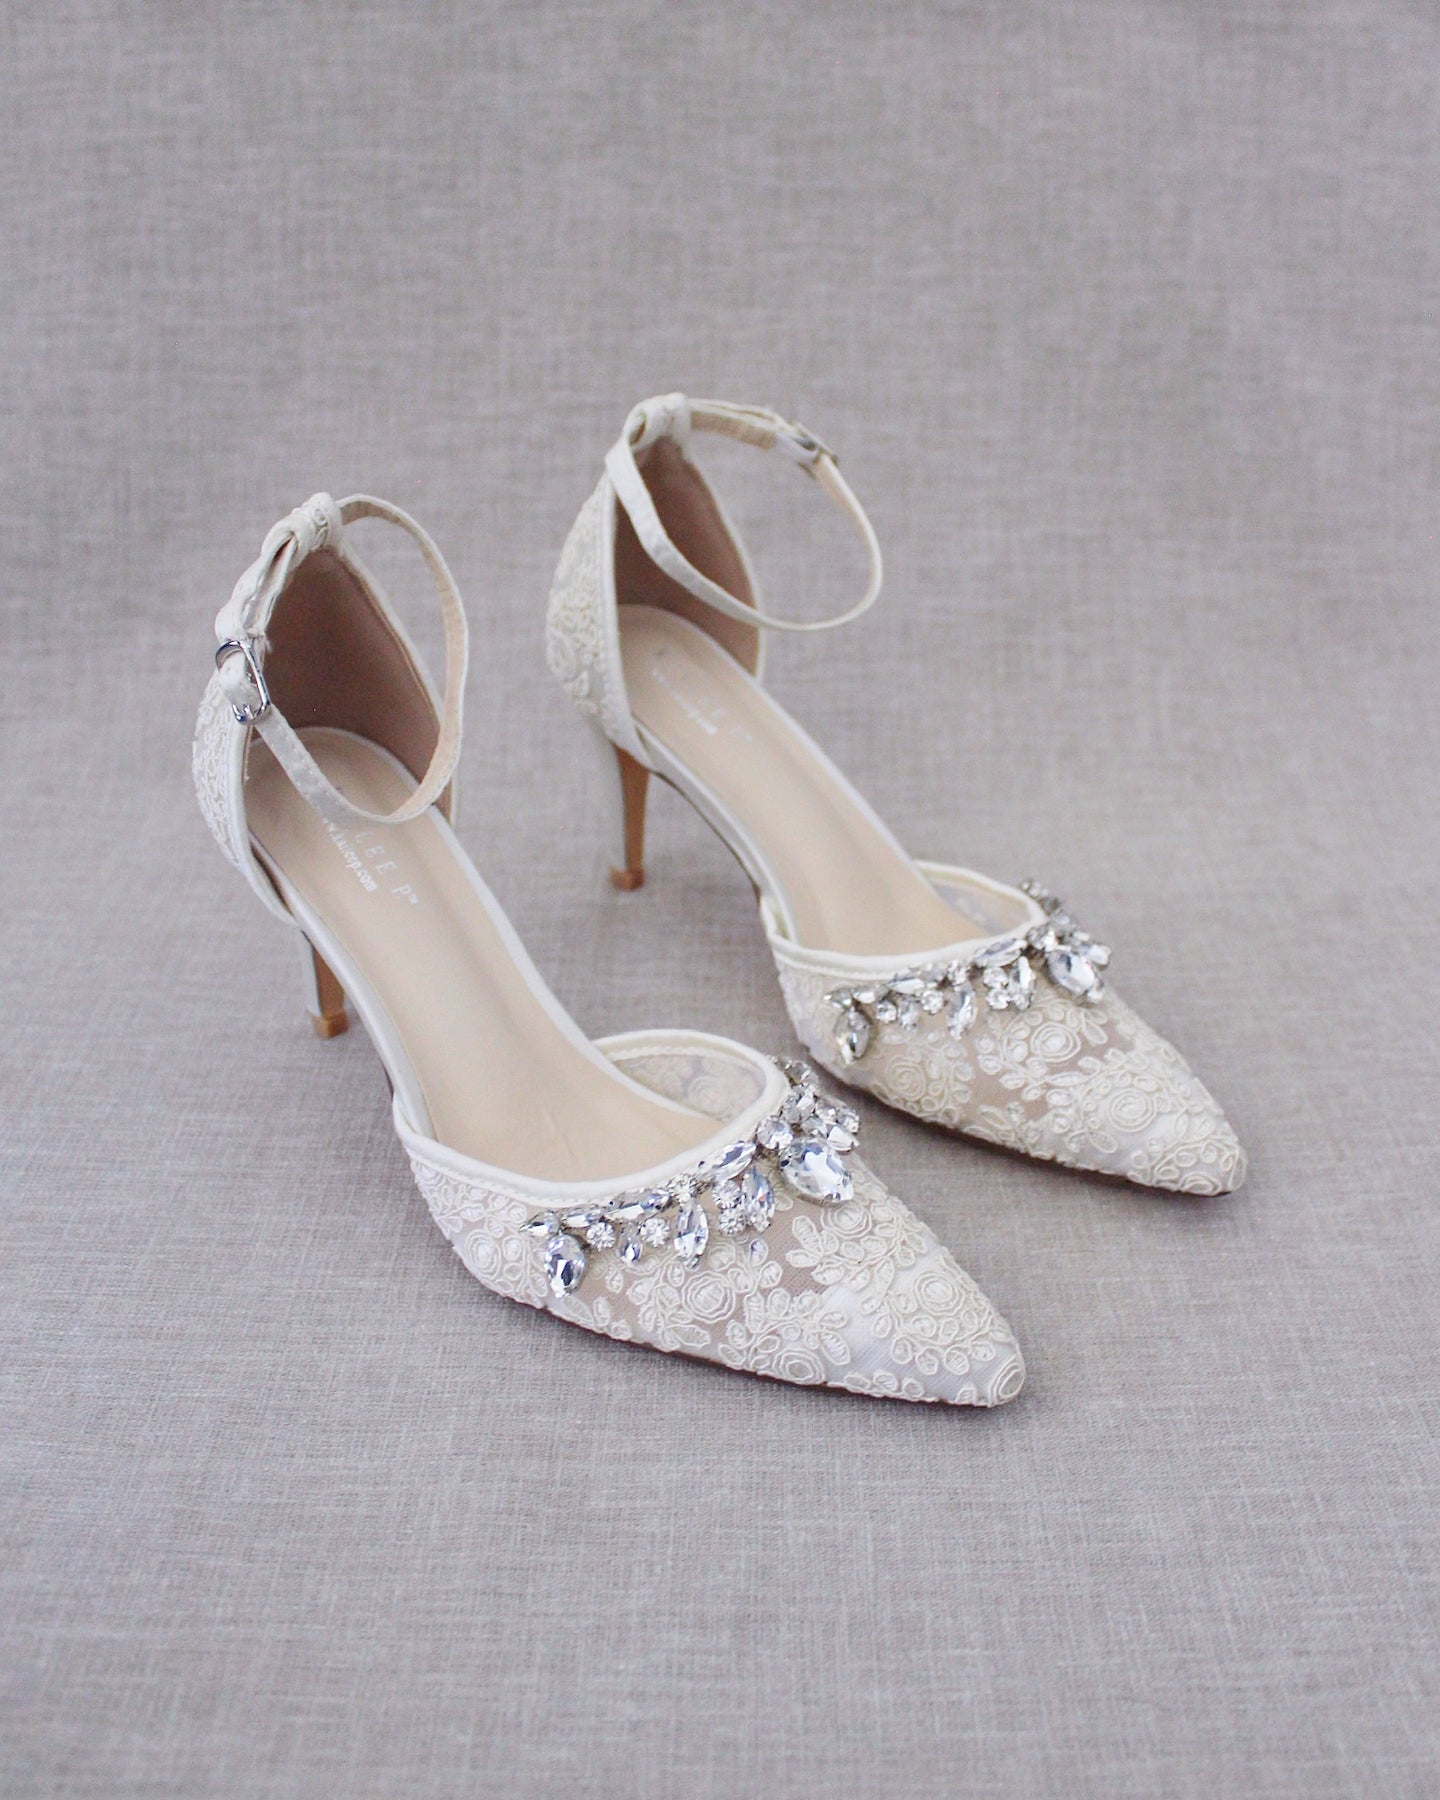 Bridal Lace Shoes, Wedding Shoes, Bridal Shoes, Bridesmaids Shoes ...